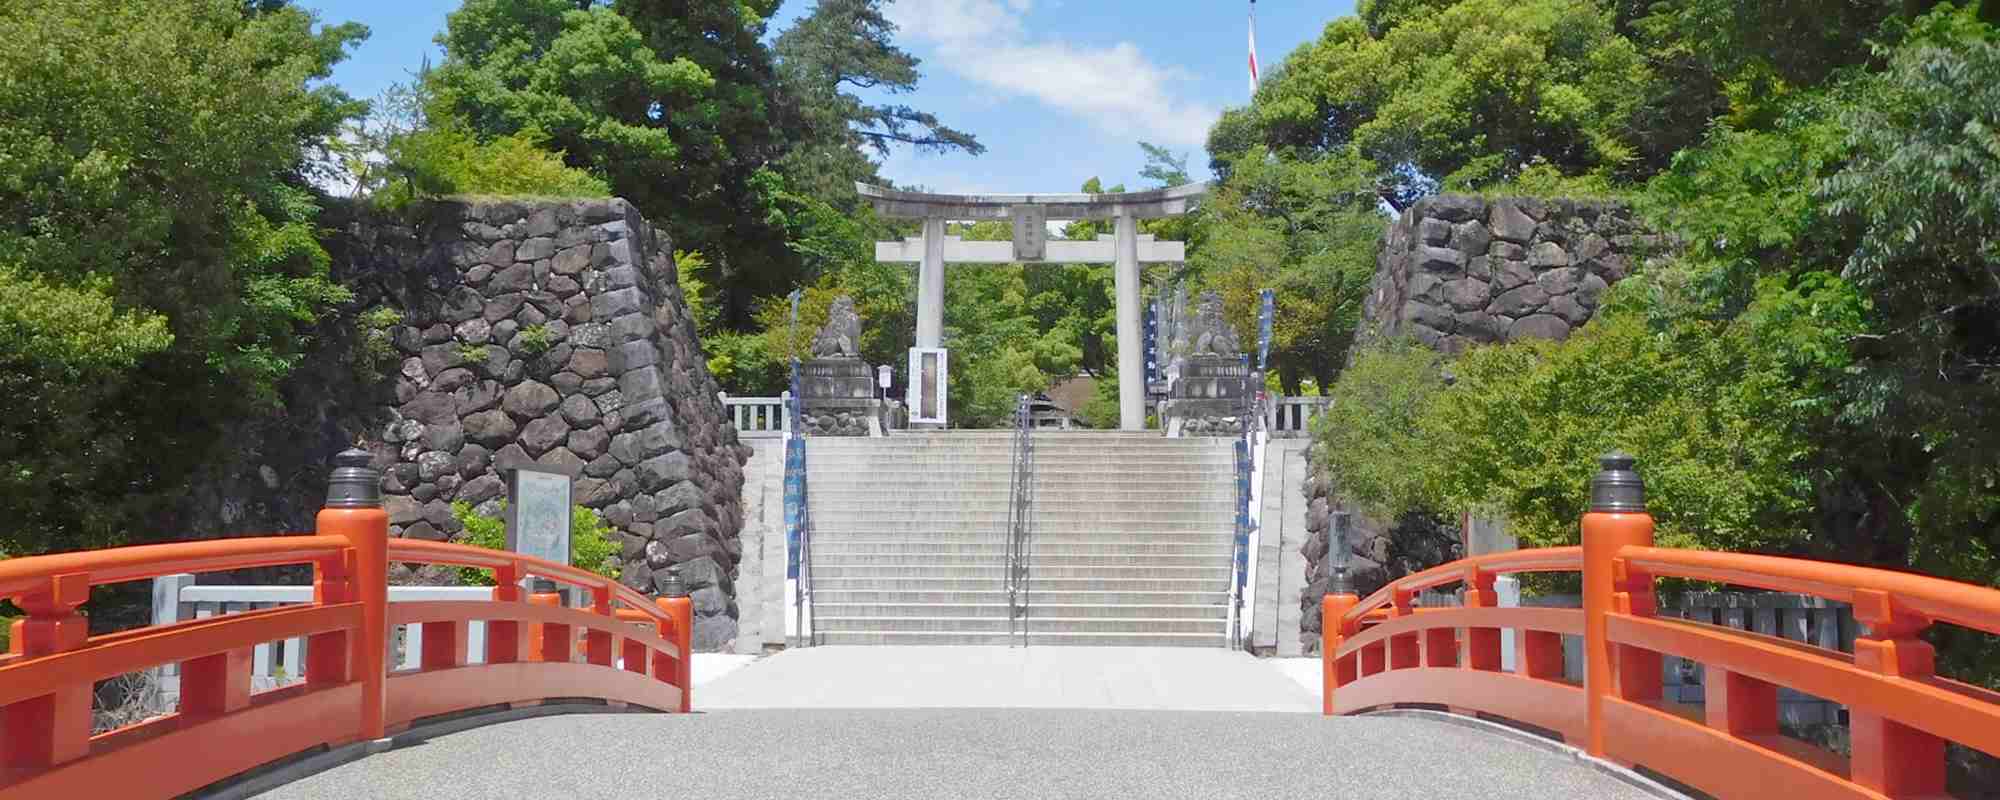 躑躅ヶ崎館・武田神社